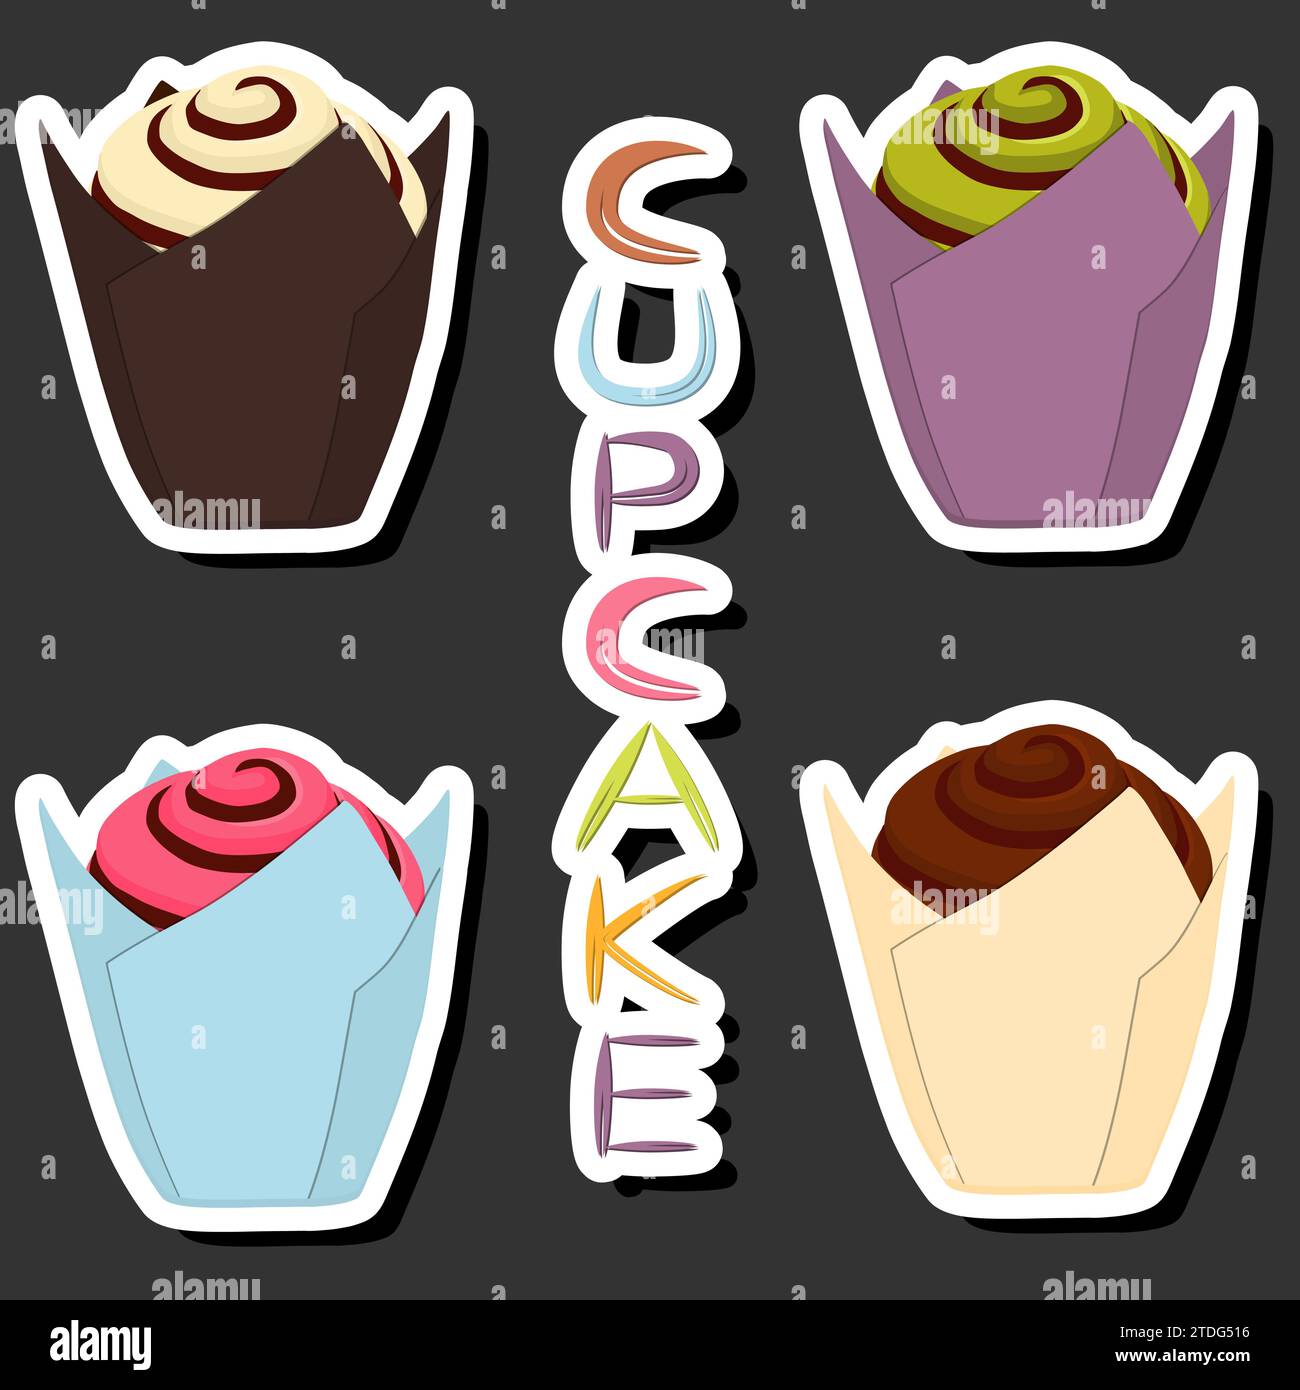 Illustration zum Thema großes Set verschiedene Arten Dessert süße Beeren Cupcake, Cupcake bestehend aus Süßwaren Schlagsahne, leckere Cupcakes bedeckt i Stock Vektor